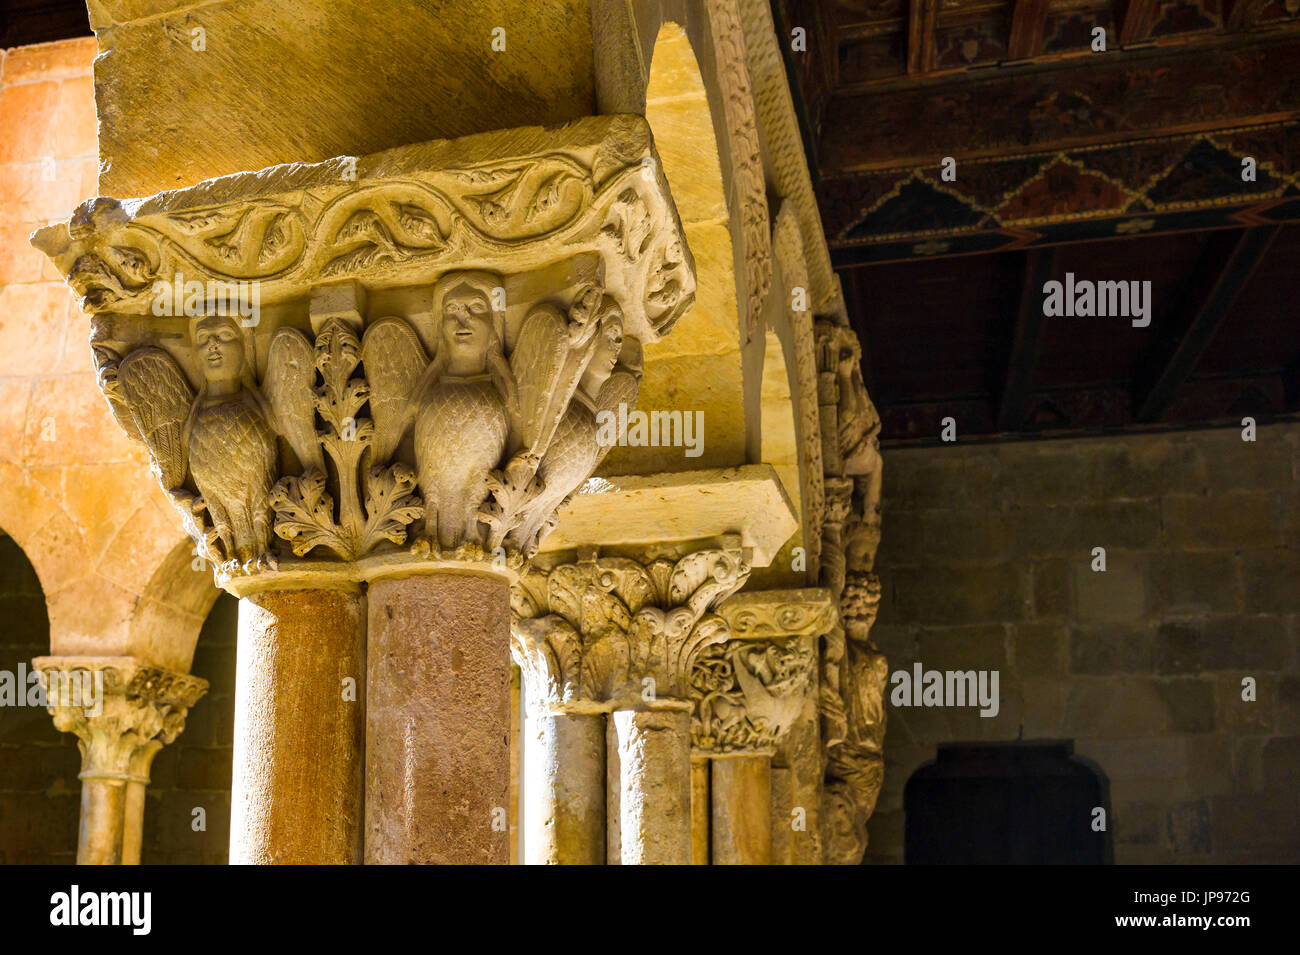 Romanesque Capitals, Cloister of Santo Domingo de Silos Monastery, Spain Stock Photo